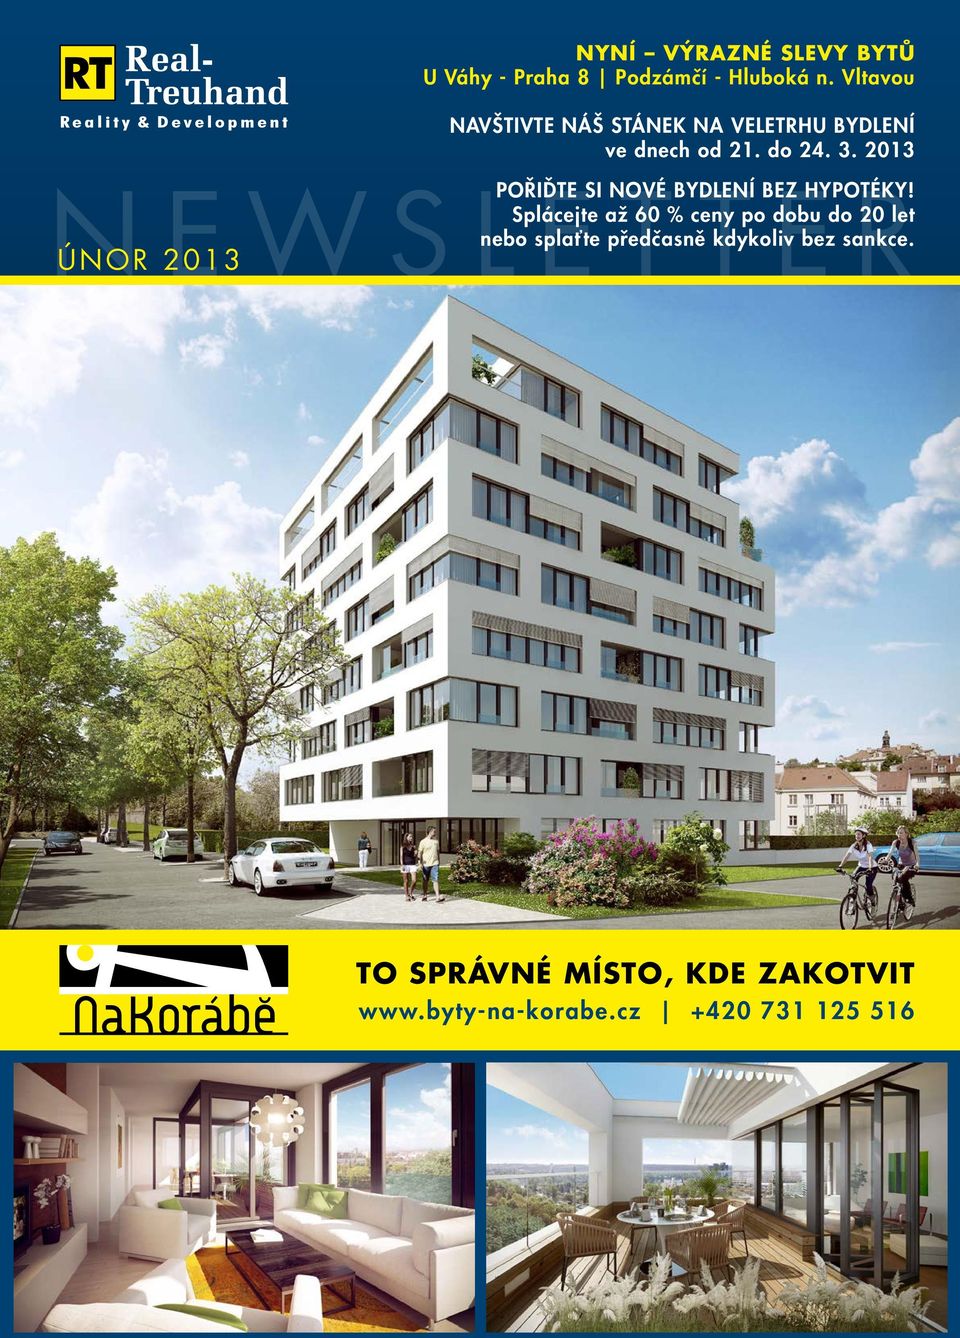 ÚNOR 2013 Nyní výrazné slevy bytů U Váhy - Praha 8 Podzámčí - Hluboká n.